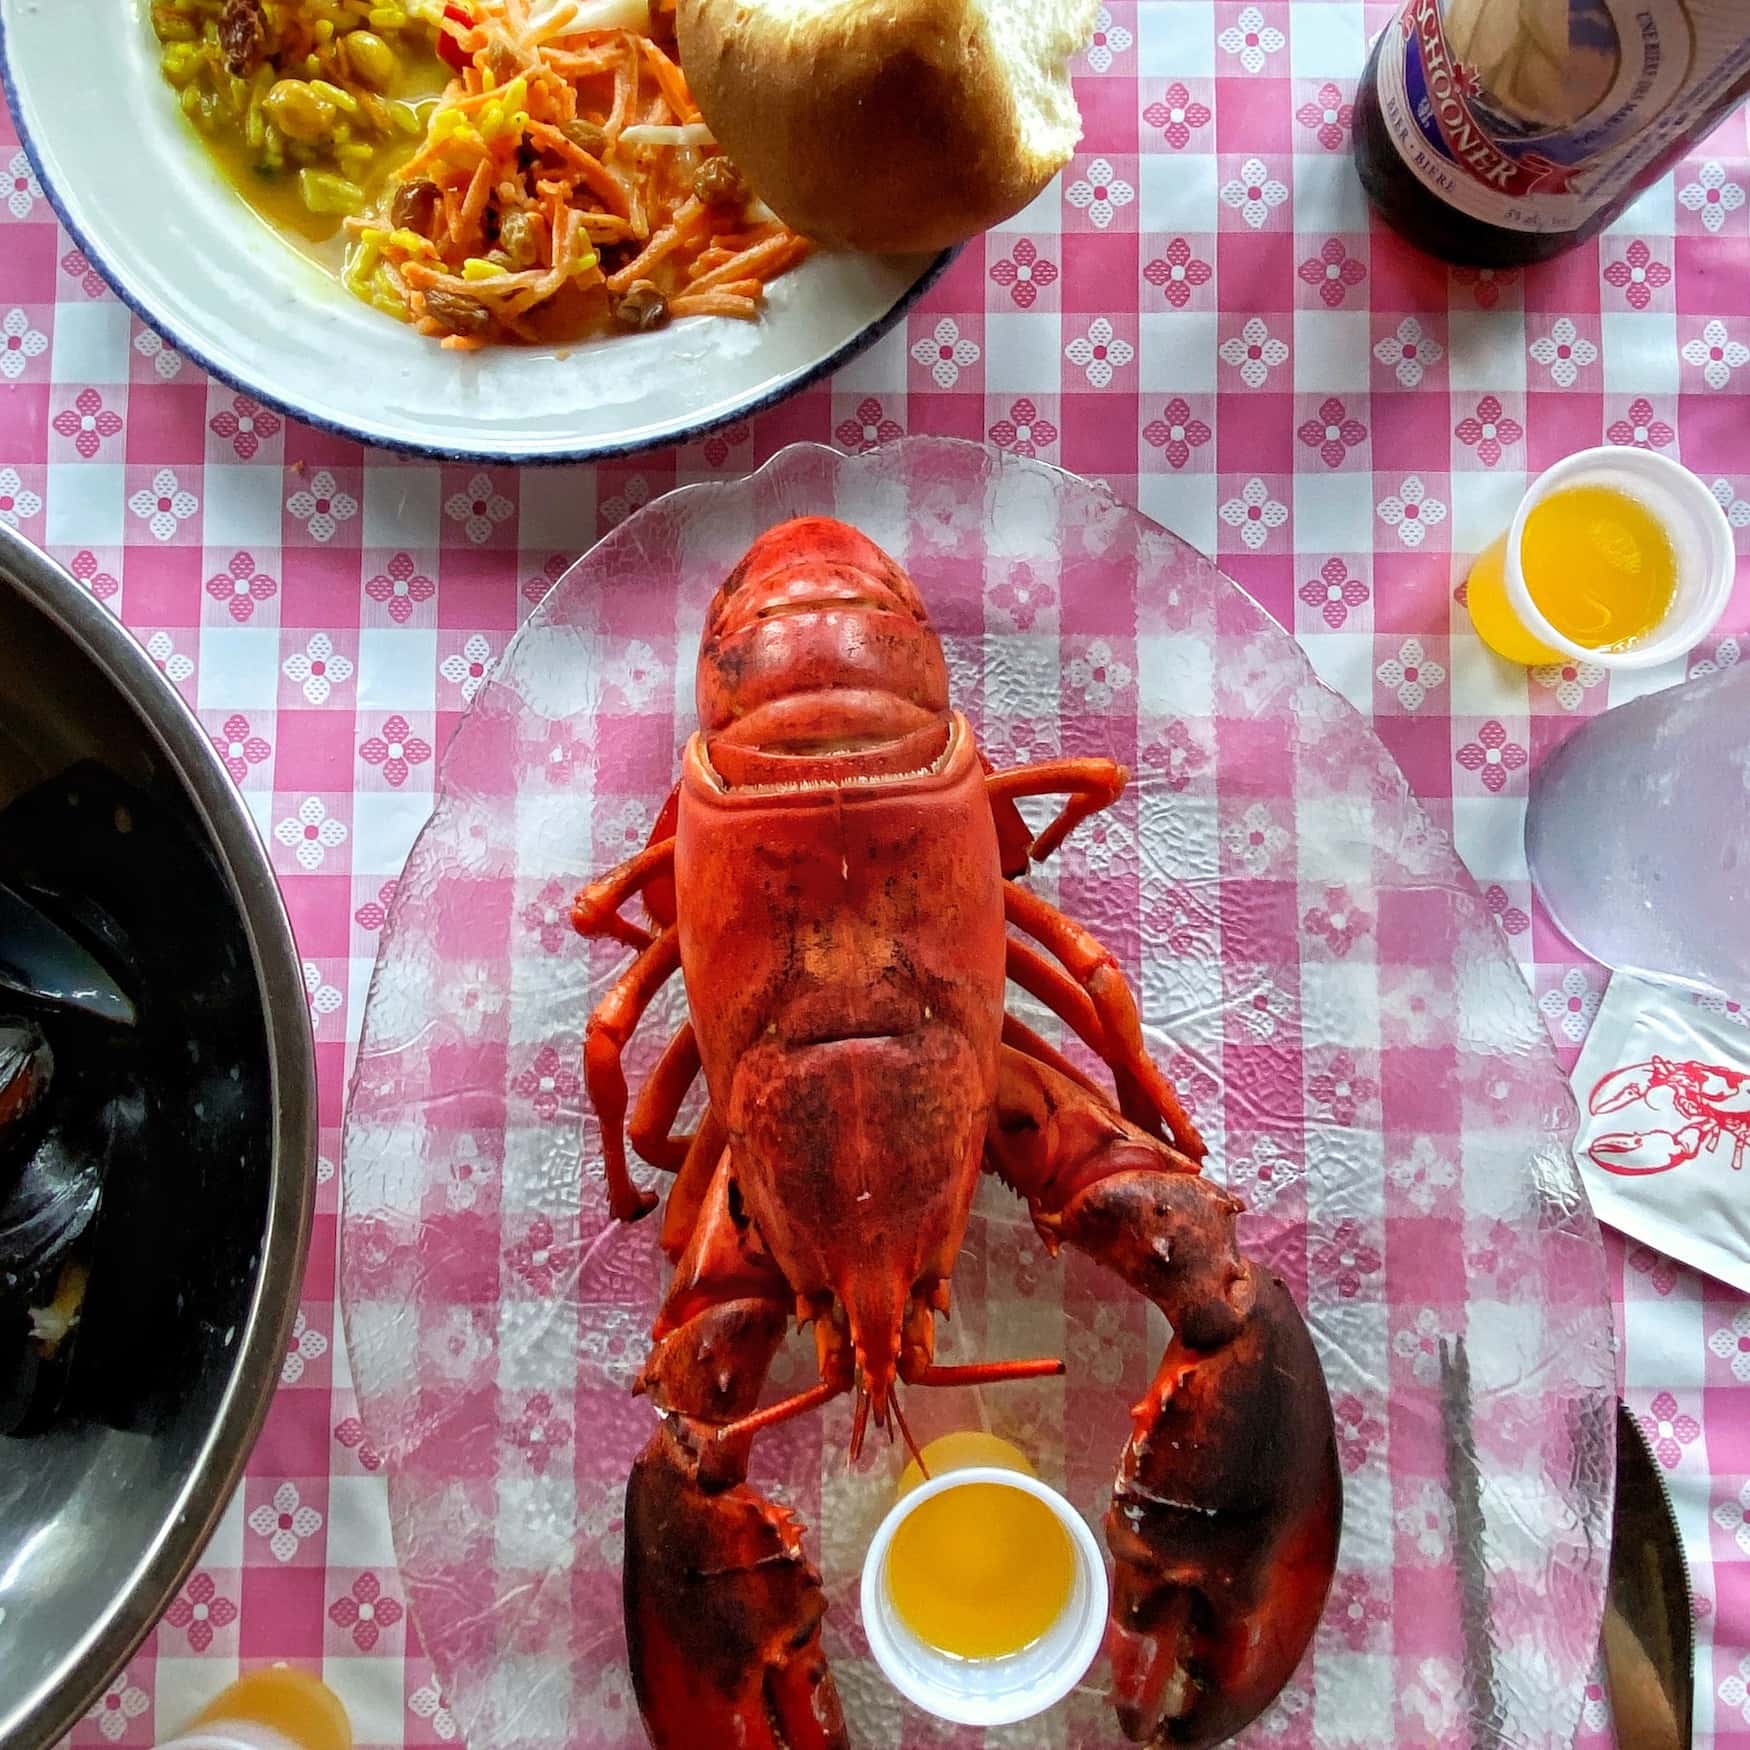 Lobster Dinner in Nova Scotia